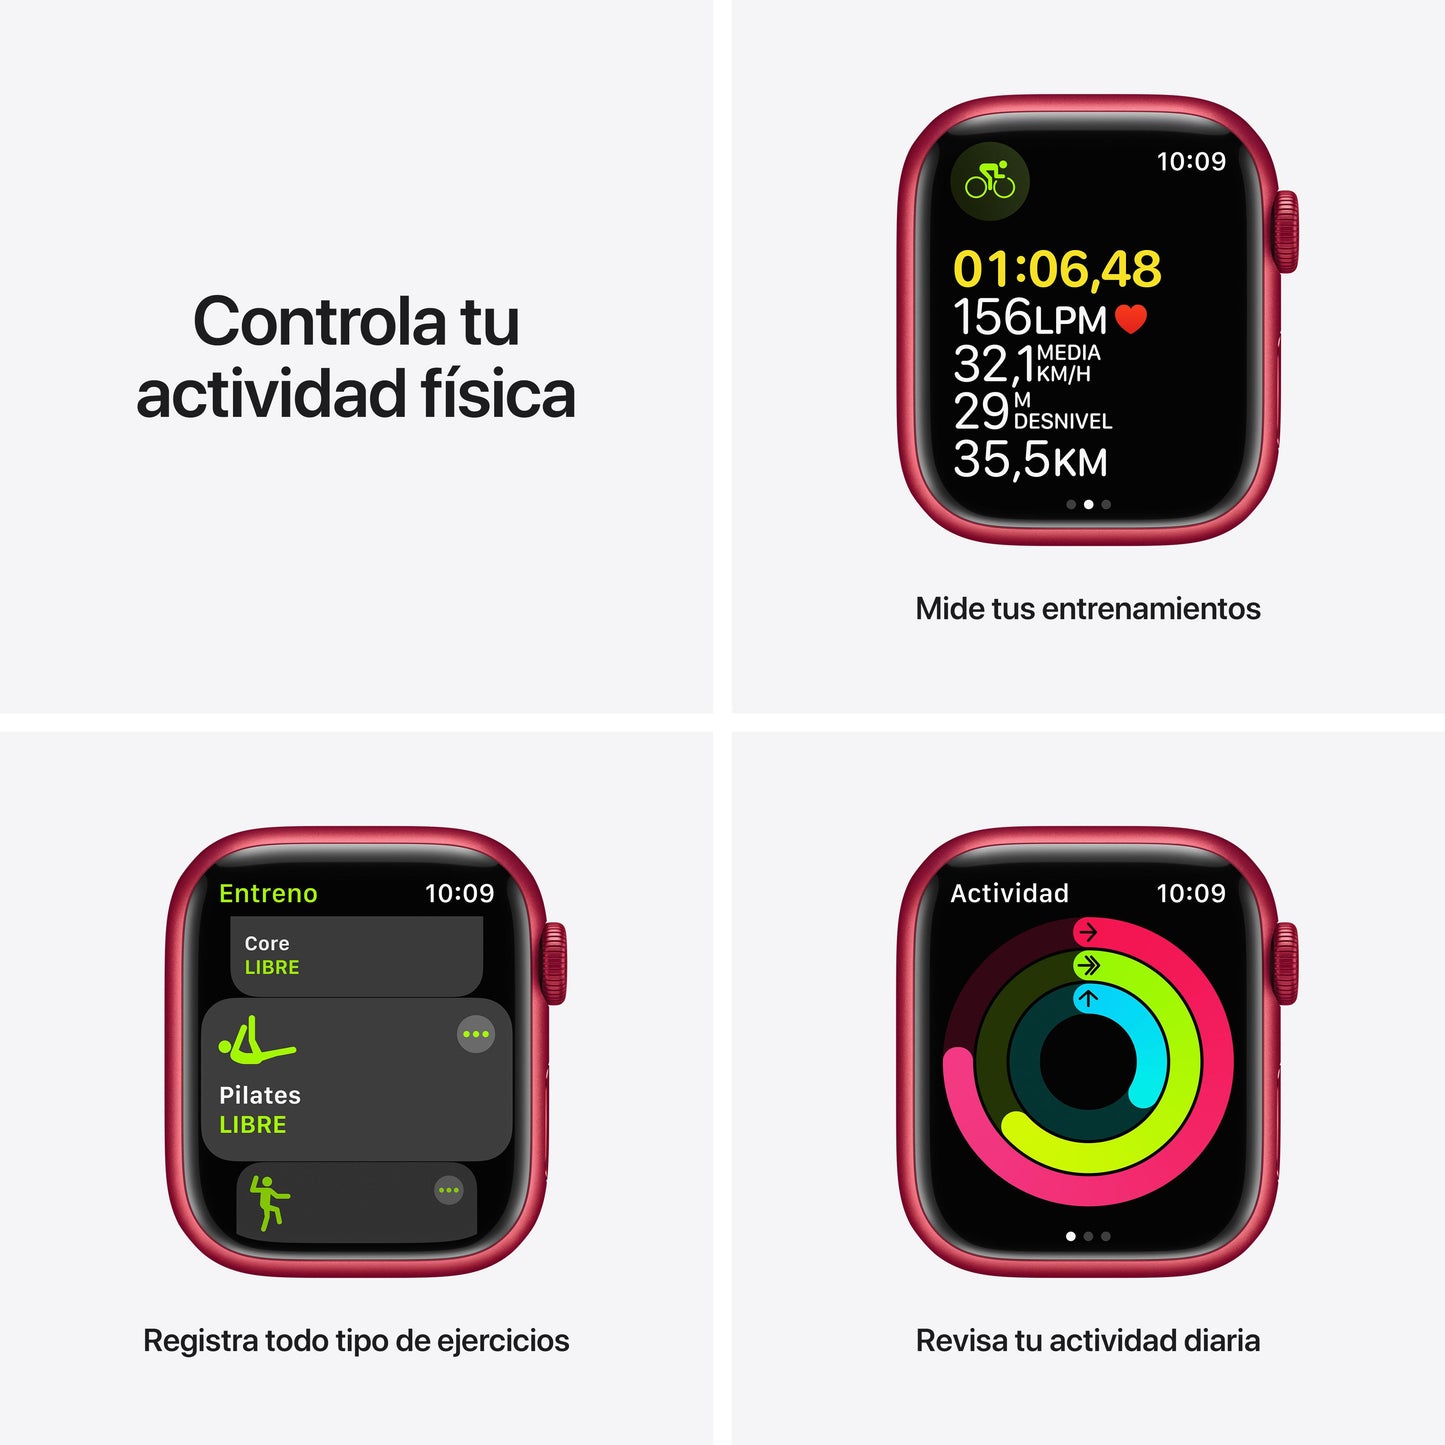 Apple Watch Series 7 (GPS) - Caja de aluminio (PRODUCT)RED de 41 mm - Correa deportiva (PRODUCT)RED - Talla única